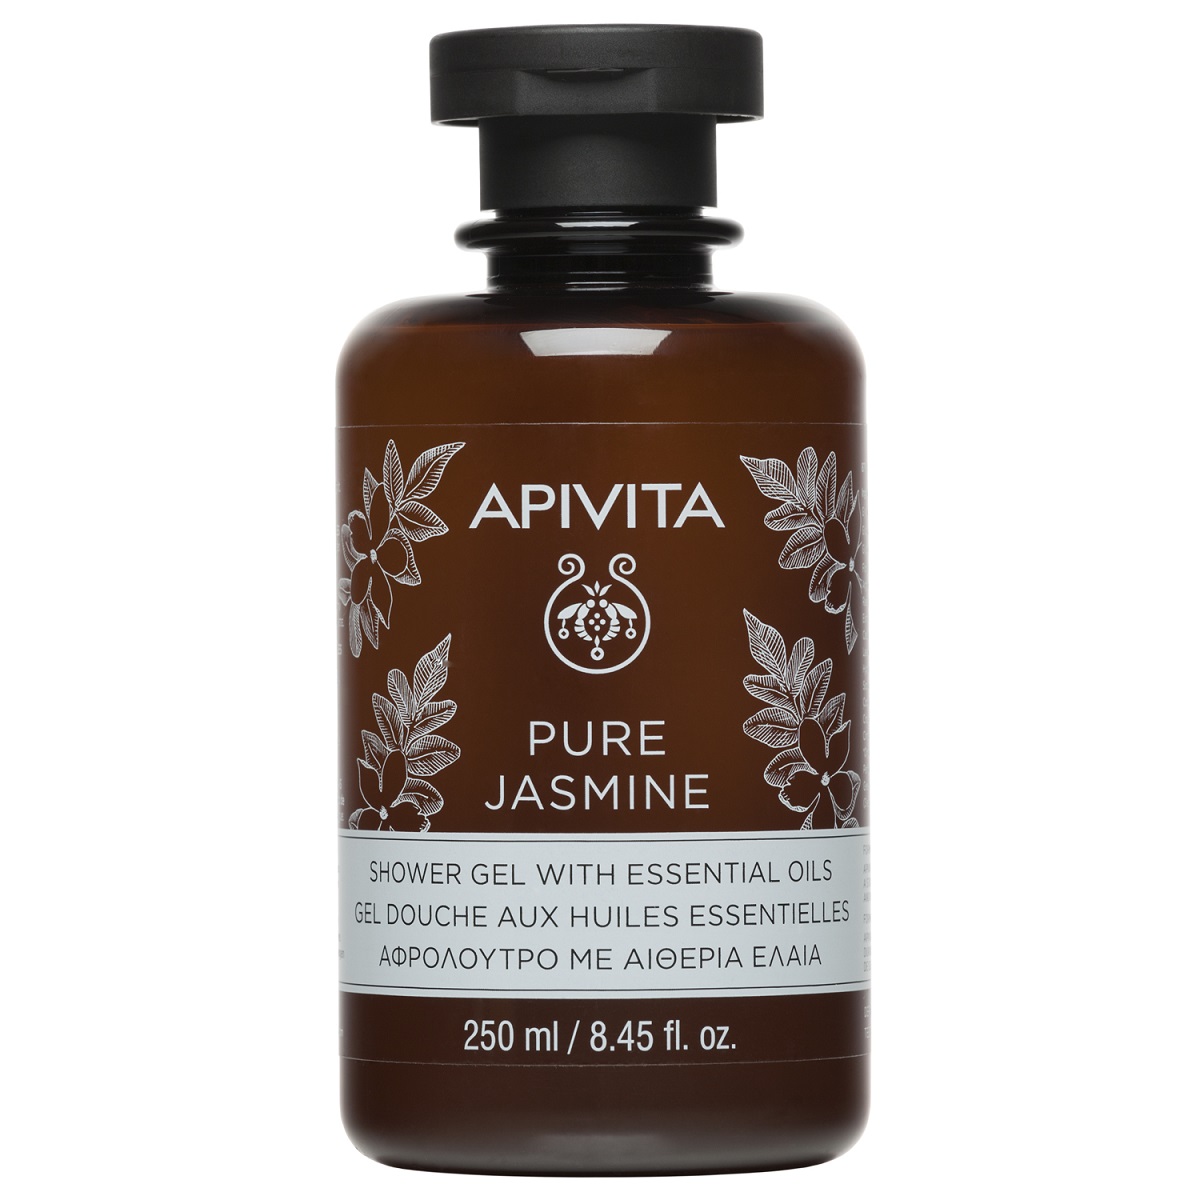 Apivita Гель для душа с эфирными маслами Чистый жасмин, 250 мл (Apivita, Body) апивита гель для душа с эфирными маслами чистый жасмин 250мл